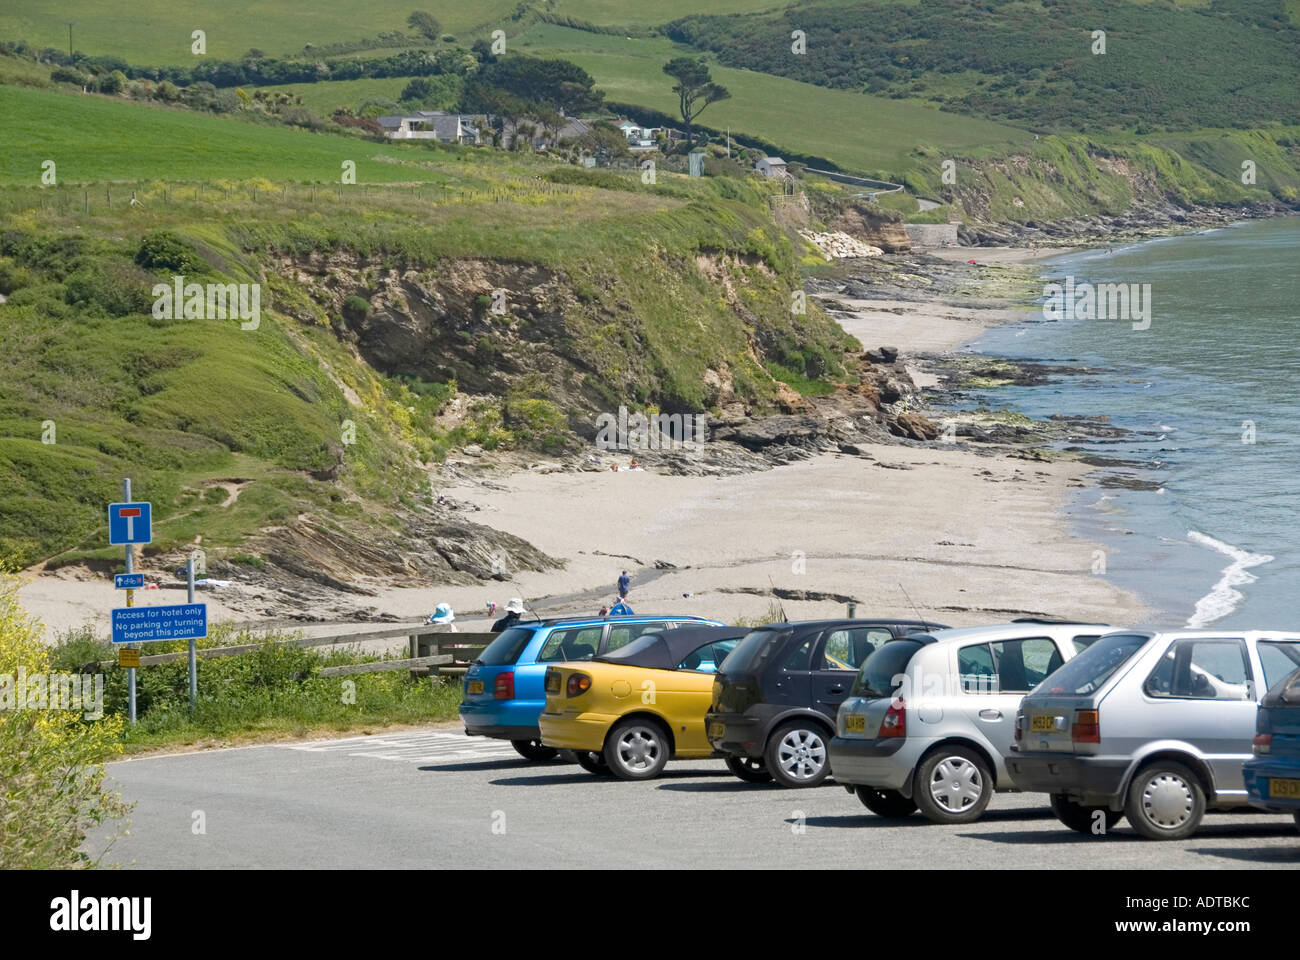 Plage de sable de Pendower et paysage rural à Gerrans Bay, sur la côte sud-ouest du sentier importance du parking pour le tourisme et les randonneurs Cornwall Angleterre Royaume-Uni Banque D'Images